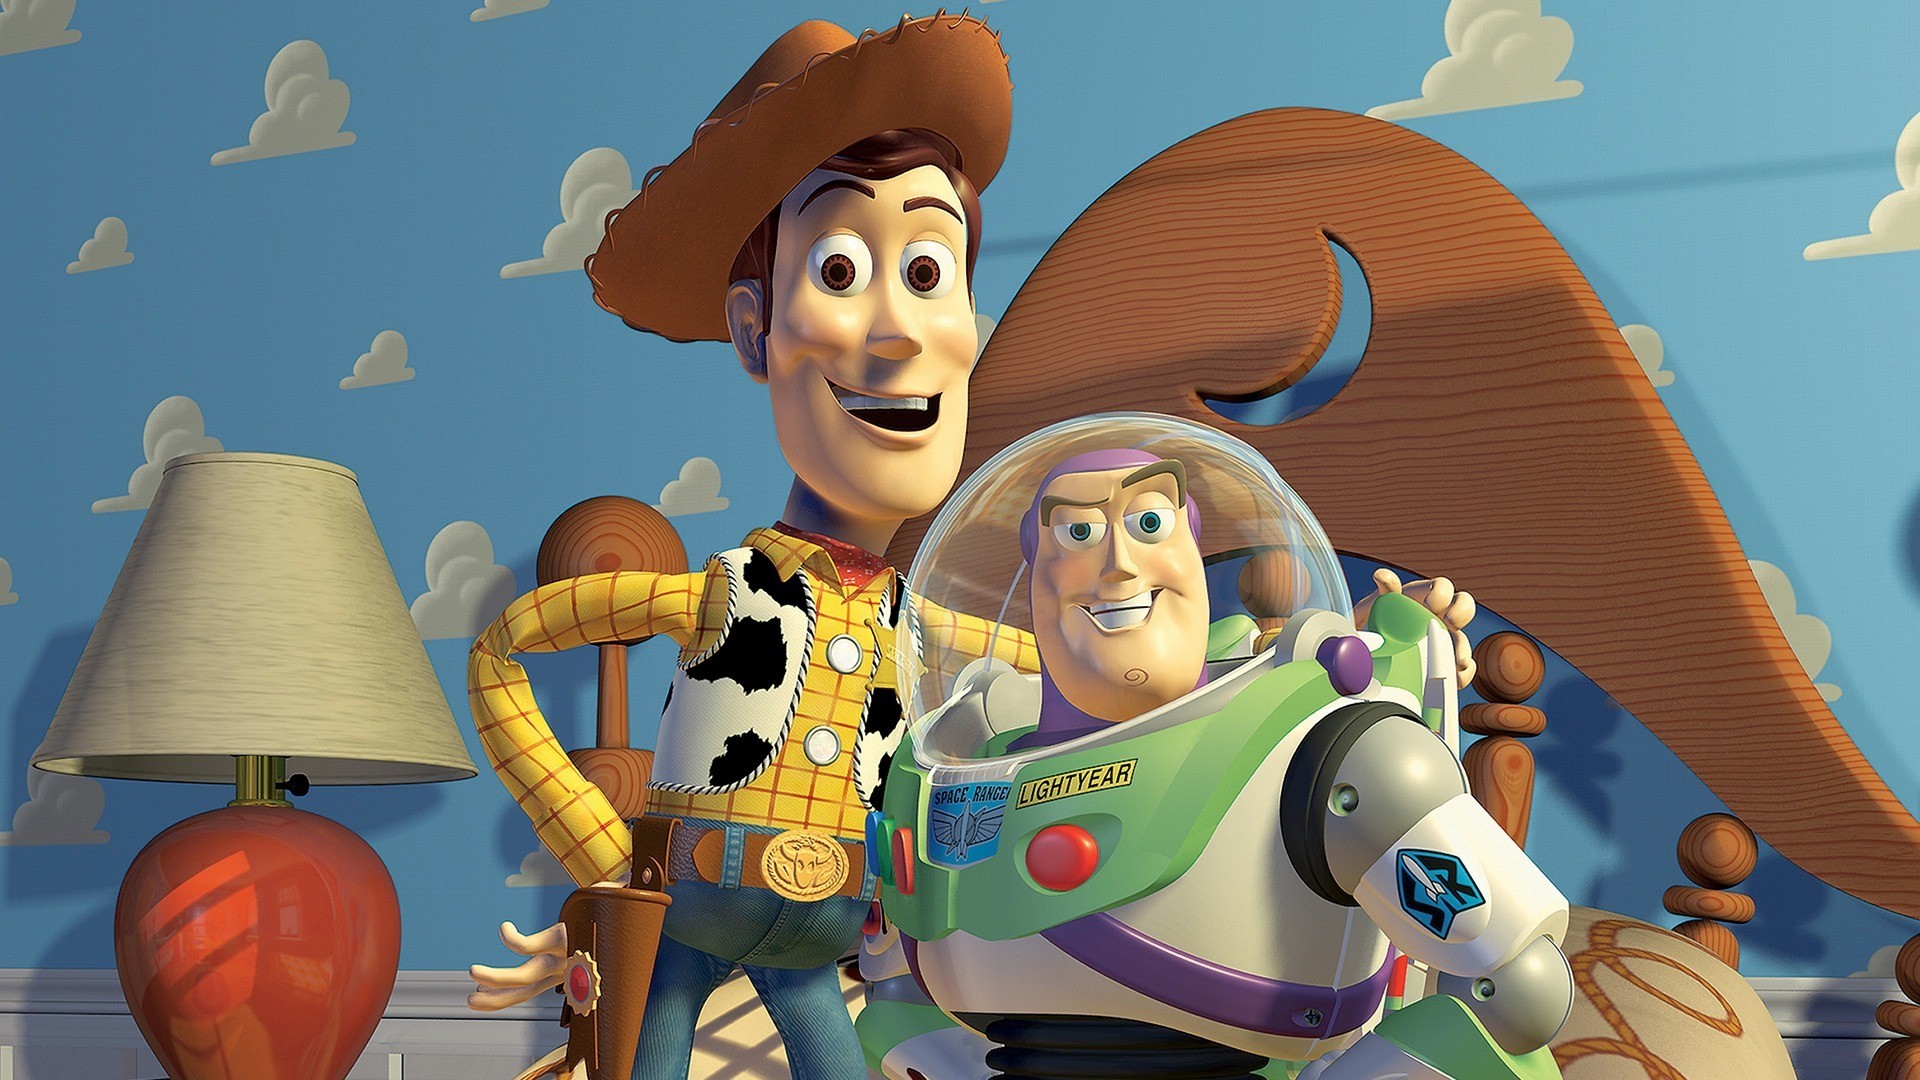 La primera película de Pixar se convirtió en un clásico moderno de la animación